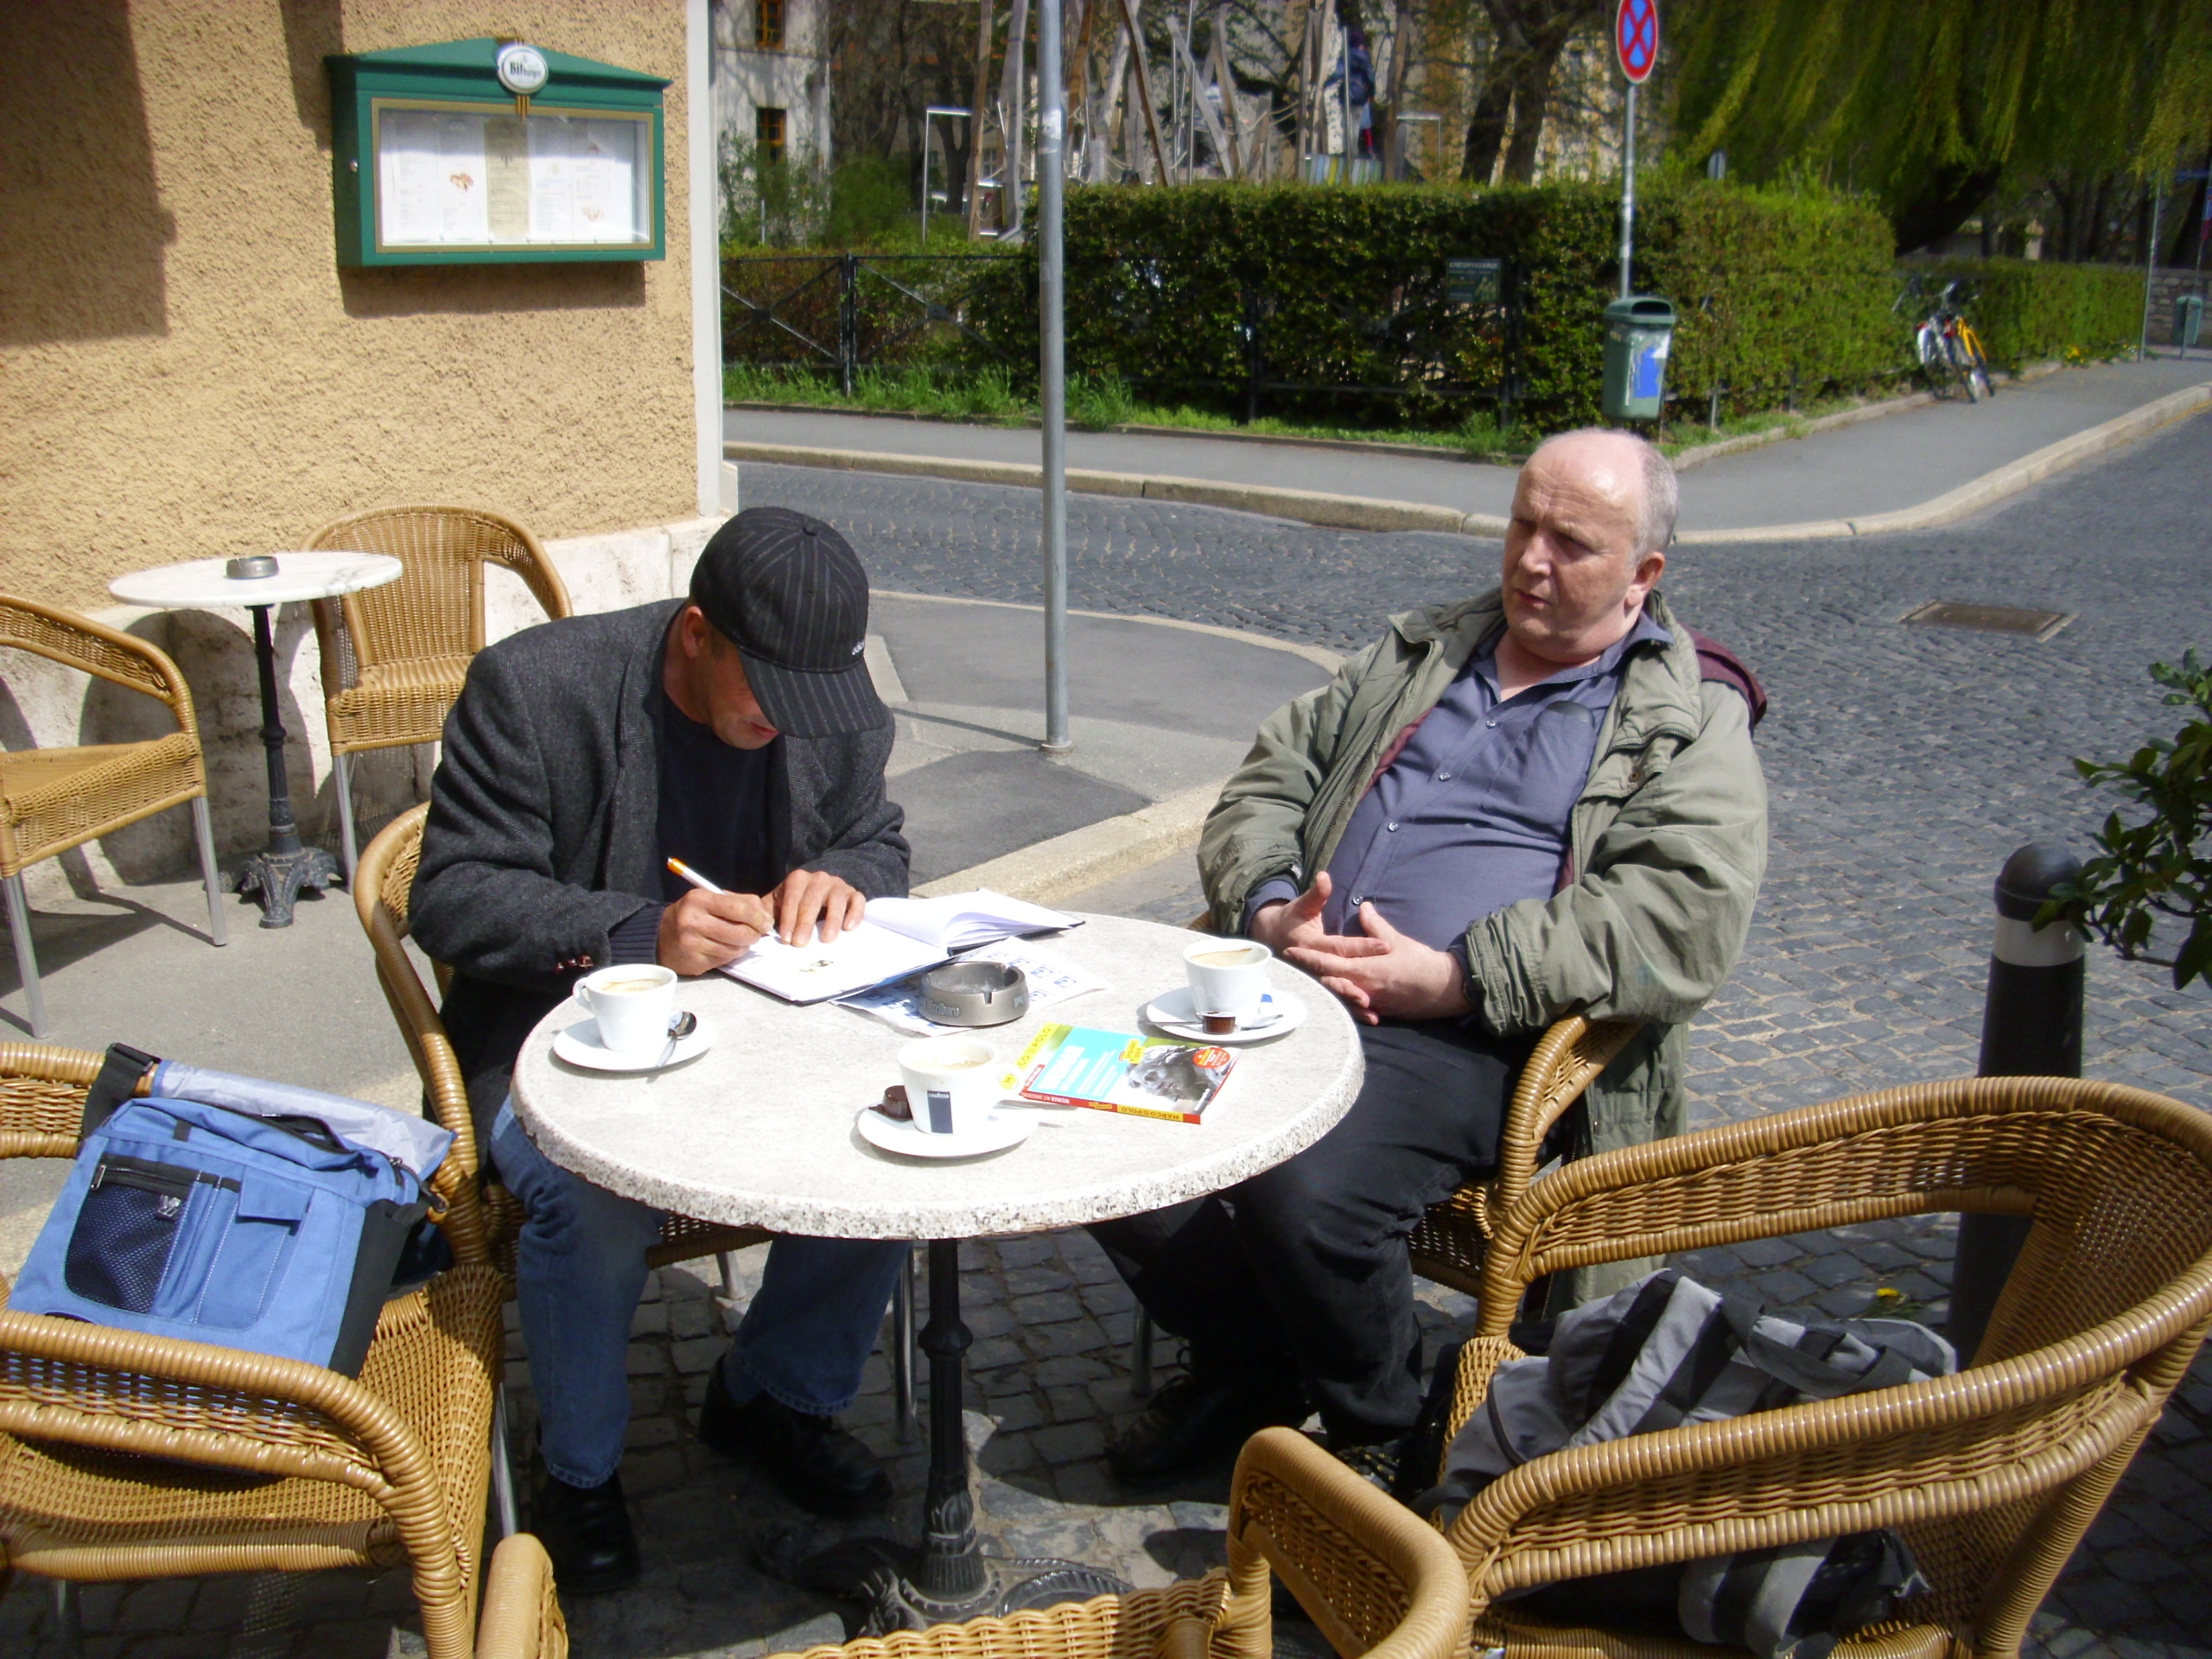 Farbfoto: Ralph Ivert und Erwin Thomasius beim Kaffe trinken vor der Brasserie am Rollplatz in Weimar im Jahre 2012. Fotograf: Bernd Paepcke.